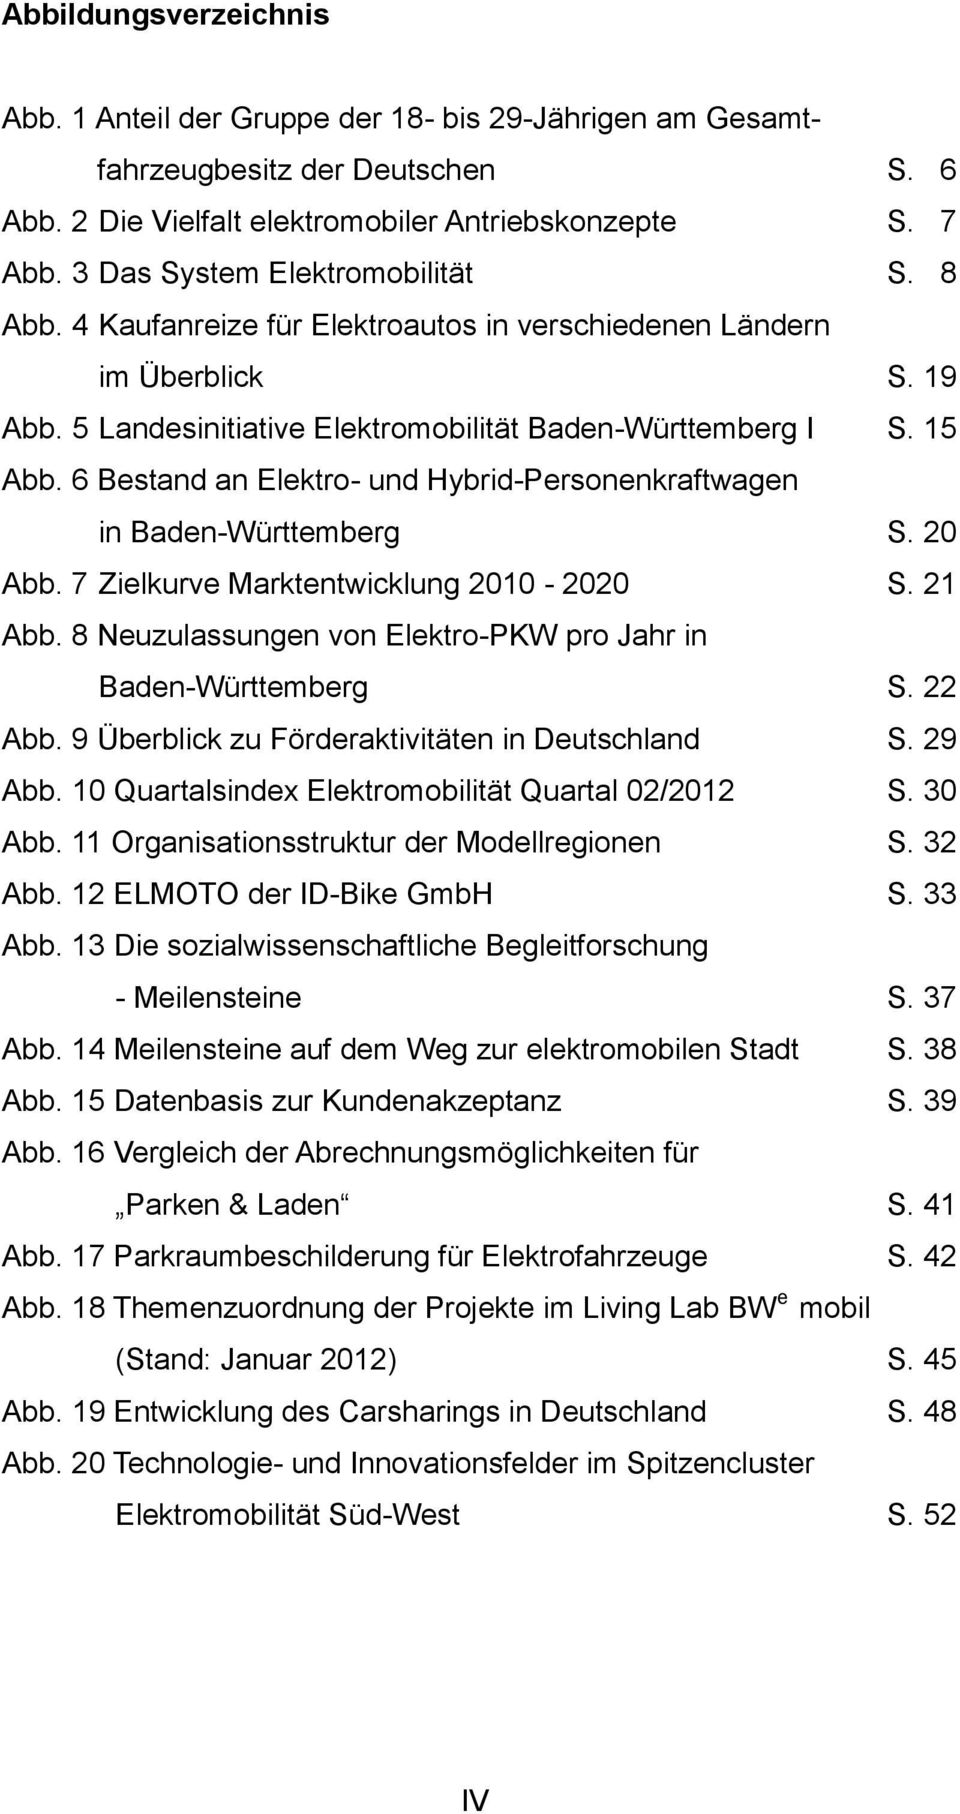 6 Bestand an Elektro- und Hybrid-Personenkraftwagen in Baden-Württemberg S. 20 Abb. 7 Zielkurve Marktentwicklung 2010-2020 S. 21 Abb. 8 Neuzulassungen von Elektro-PKW pro Jahr in Baden-Württemberg S.